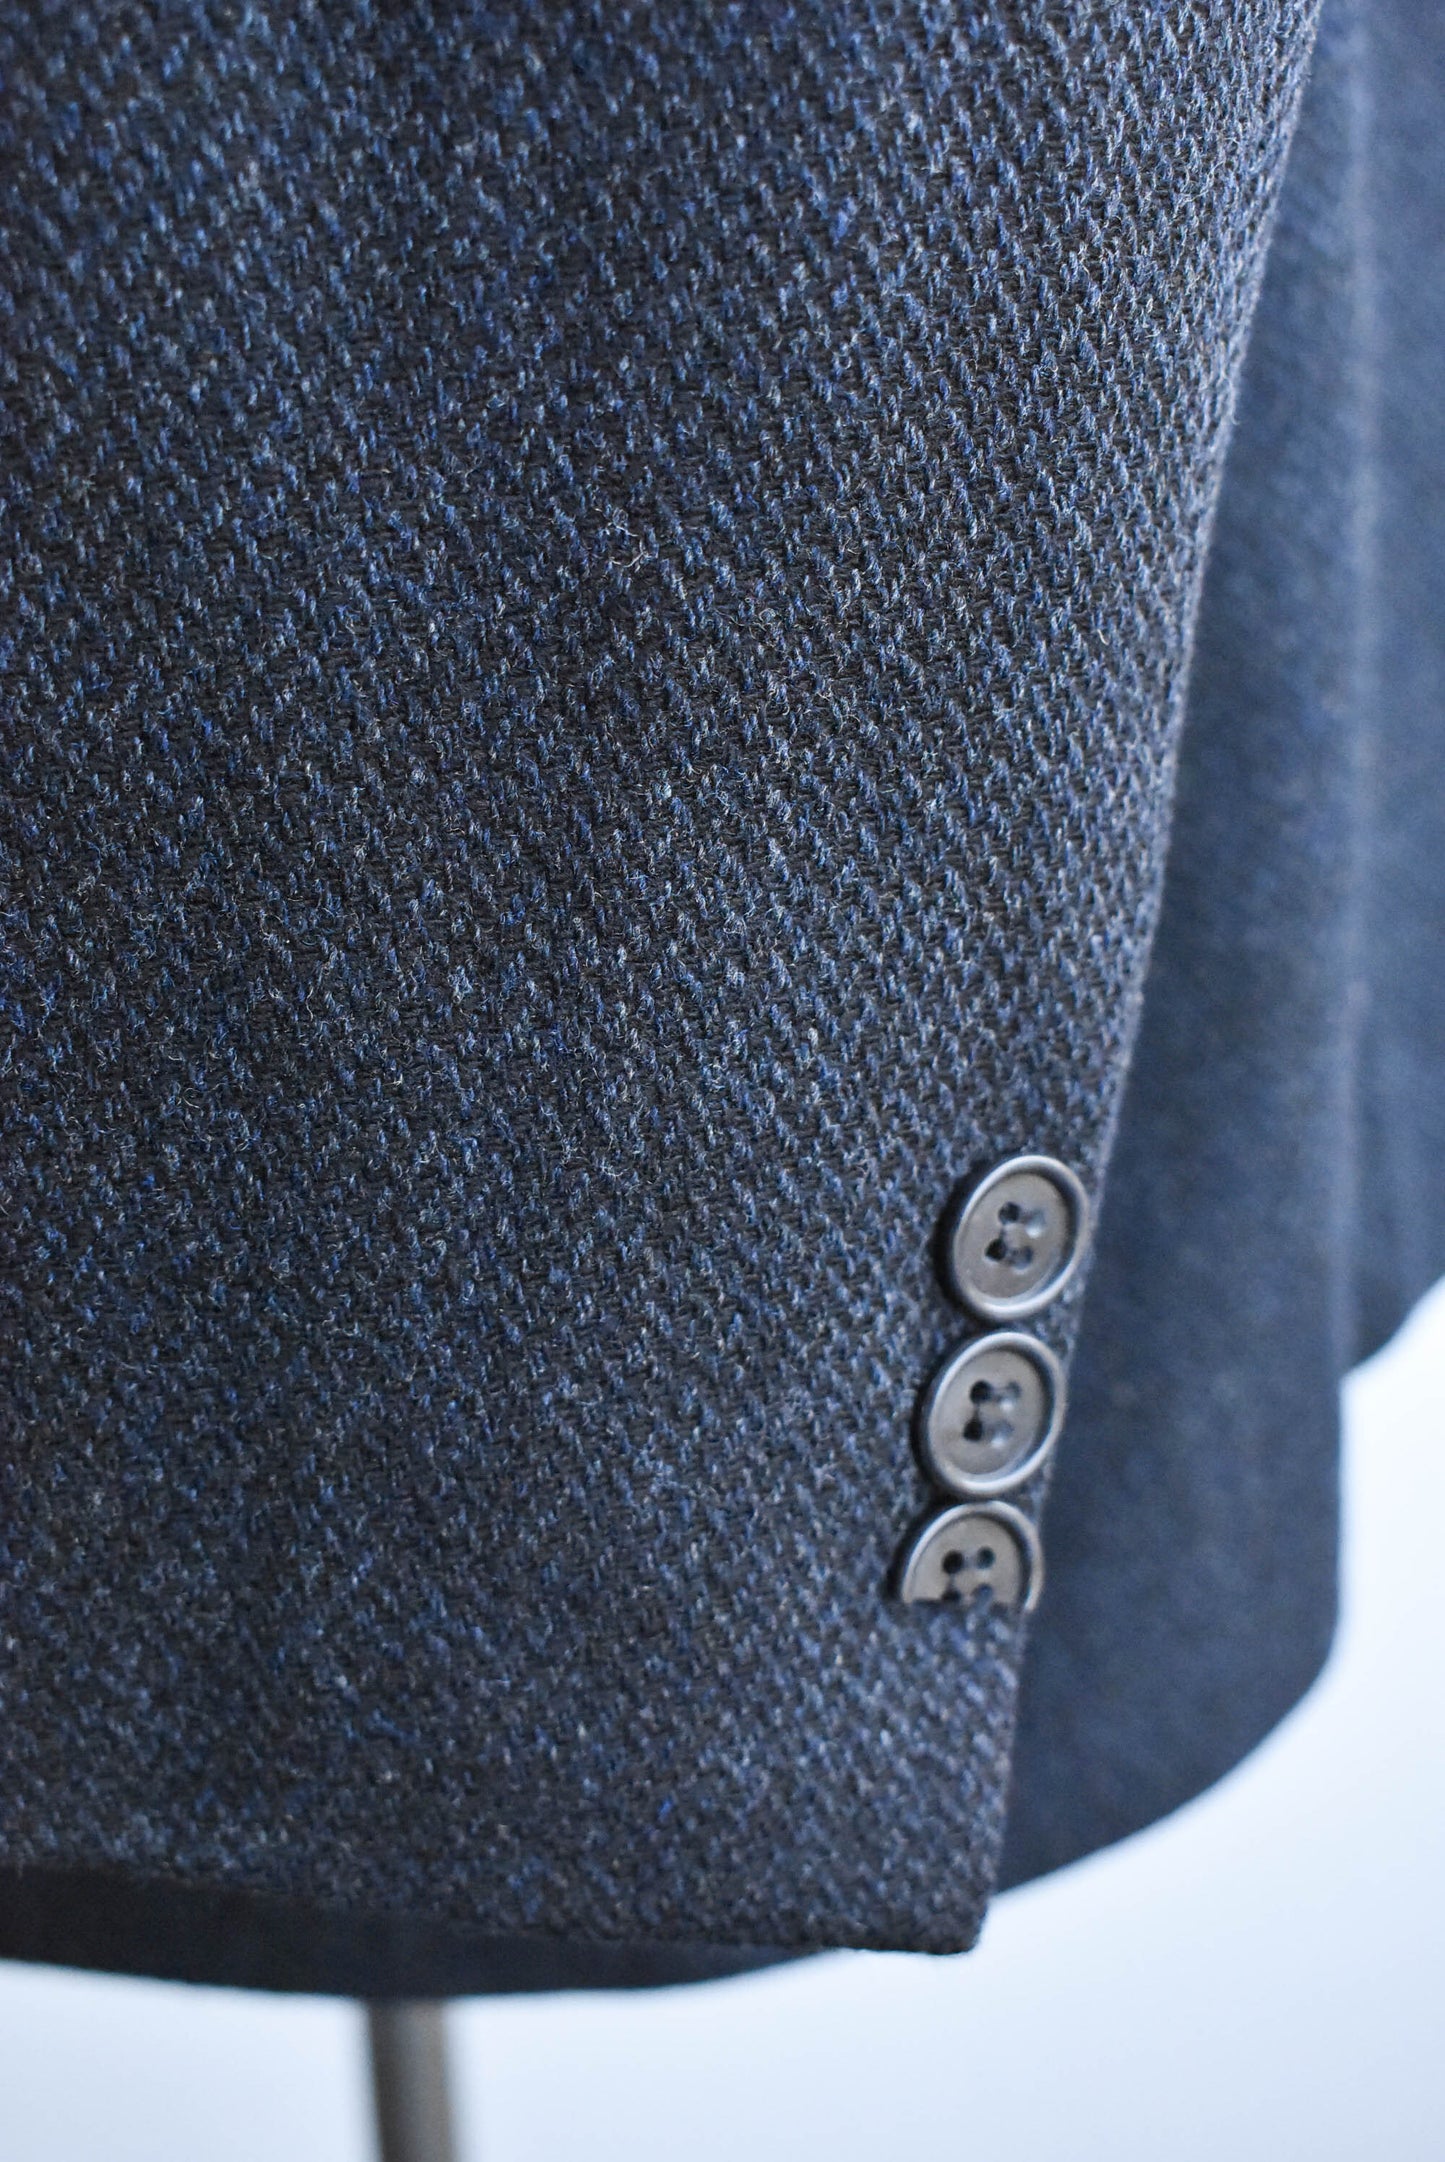 Orsini Uomo wool suit jacket, size 108R